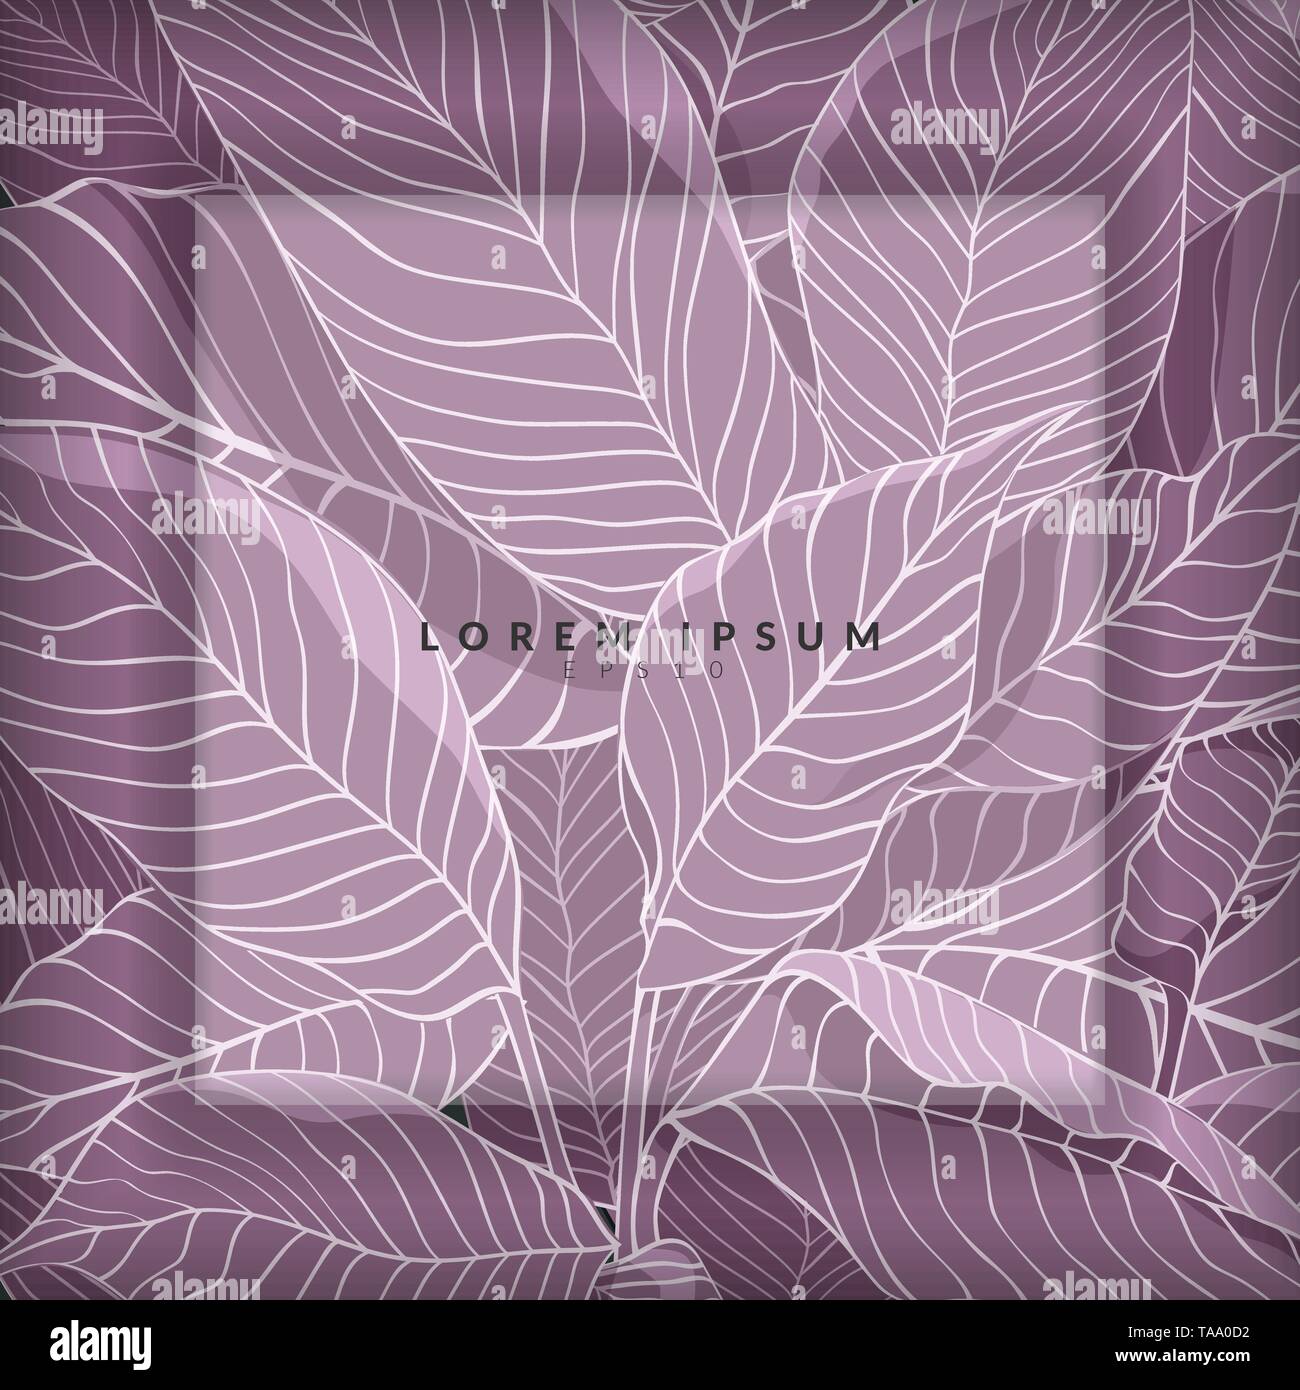 Layout creativo realizzato da schizzo di viola lascia come sfondo con strato bianco per una copia dello spazio, laici piana. concetto Natura Illustrazione Vettoriale